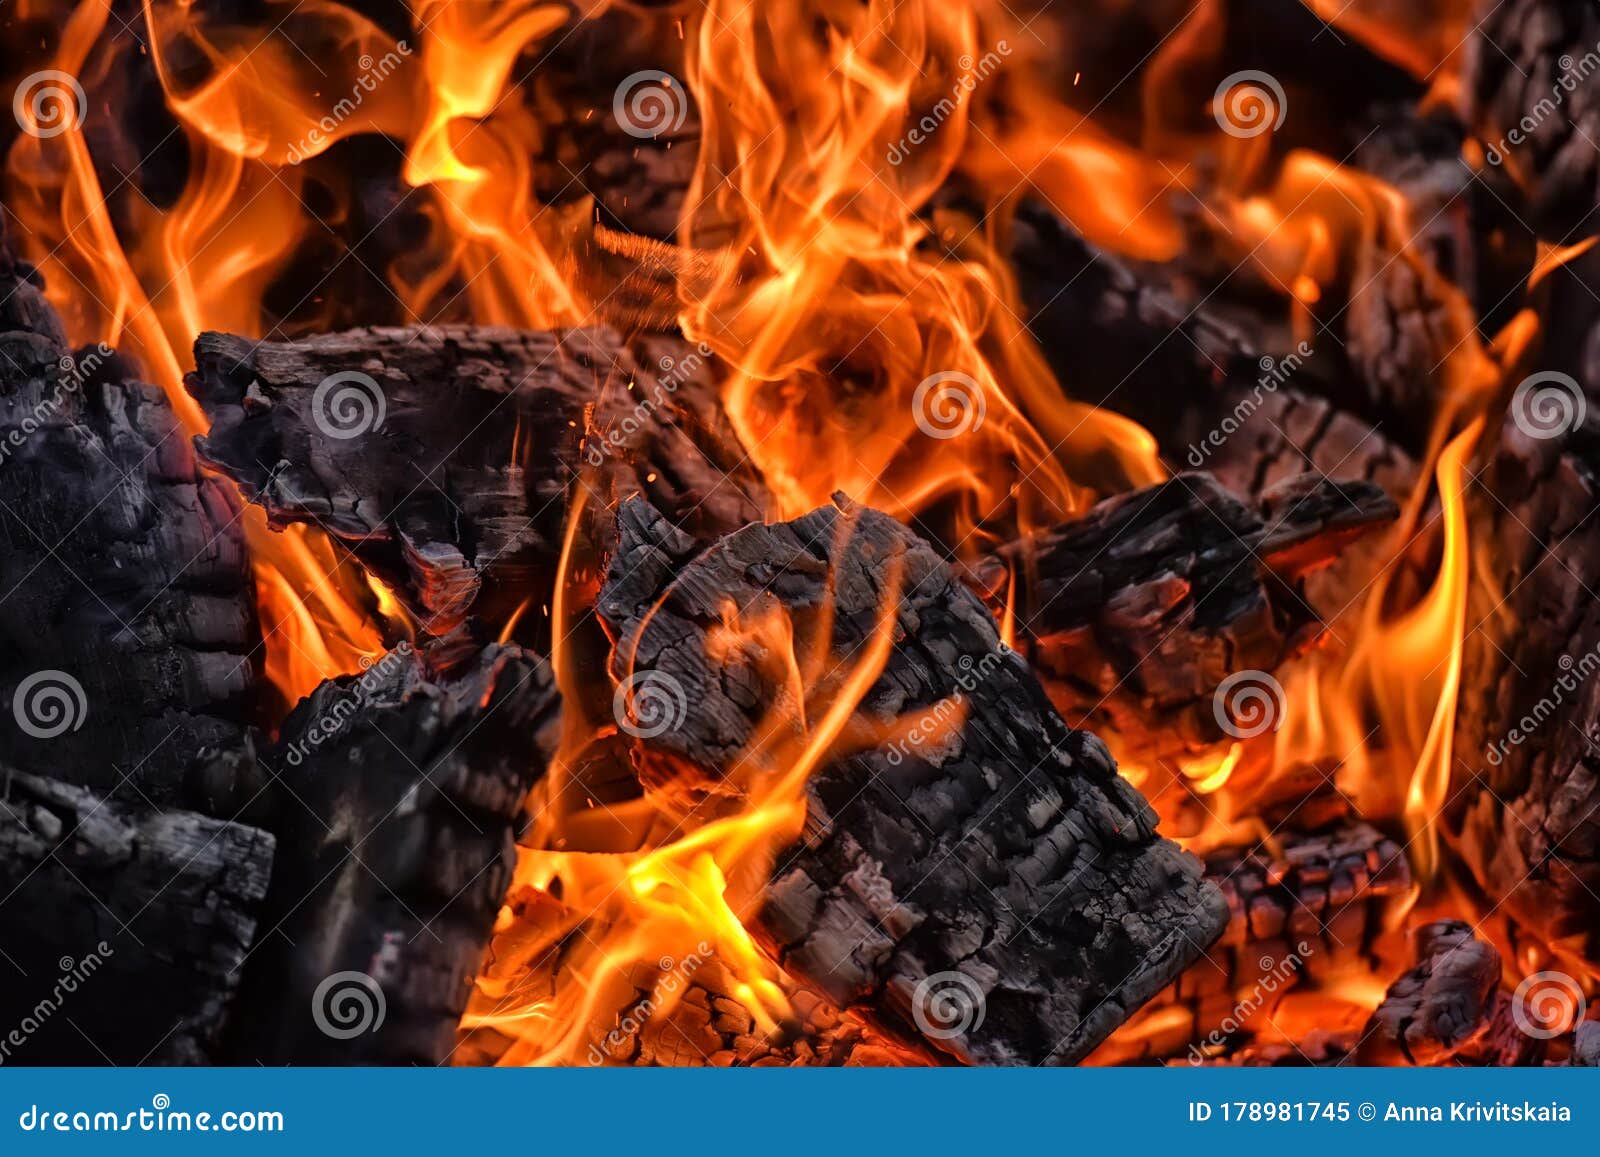 Les Flammes Et Les Braises Chaudes. Image stock - Image du